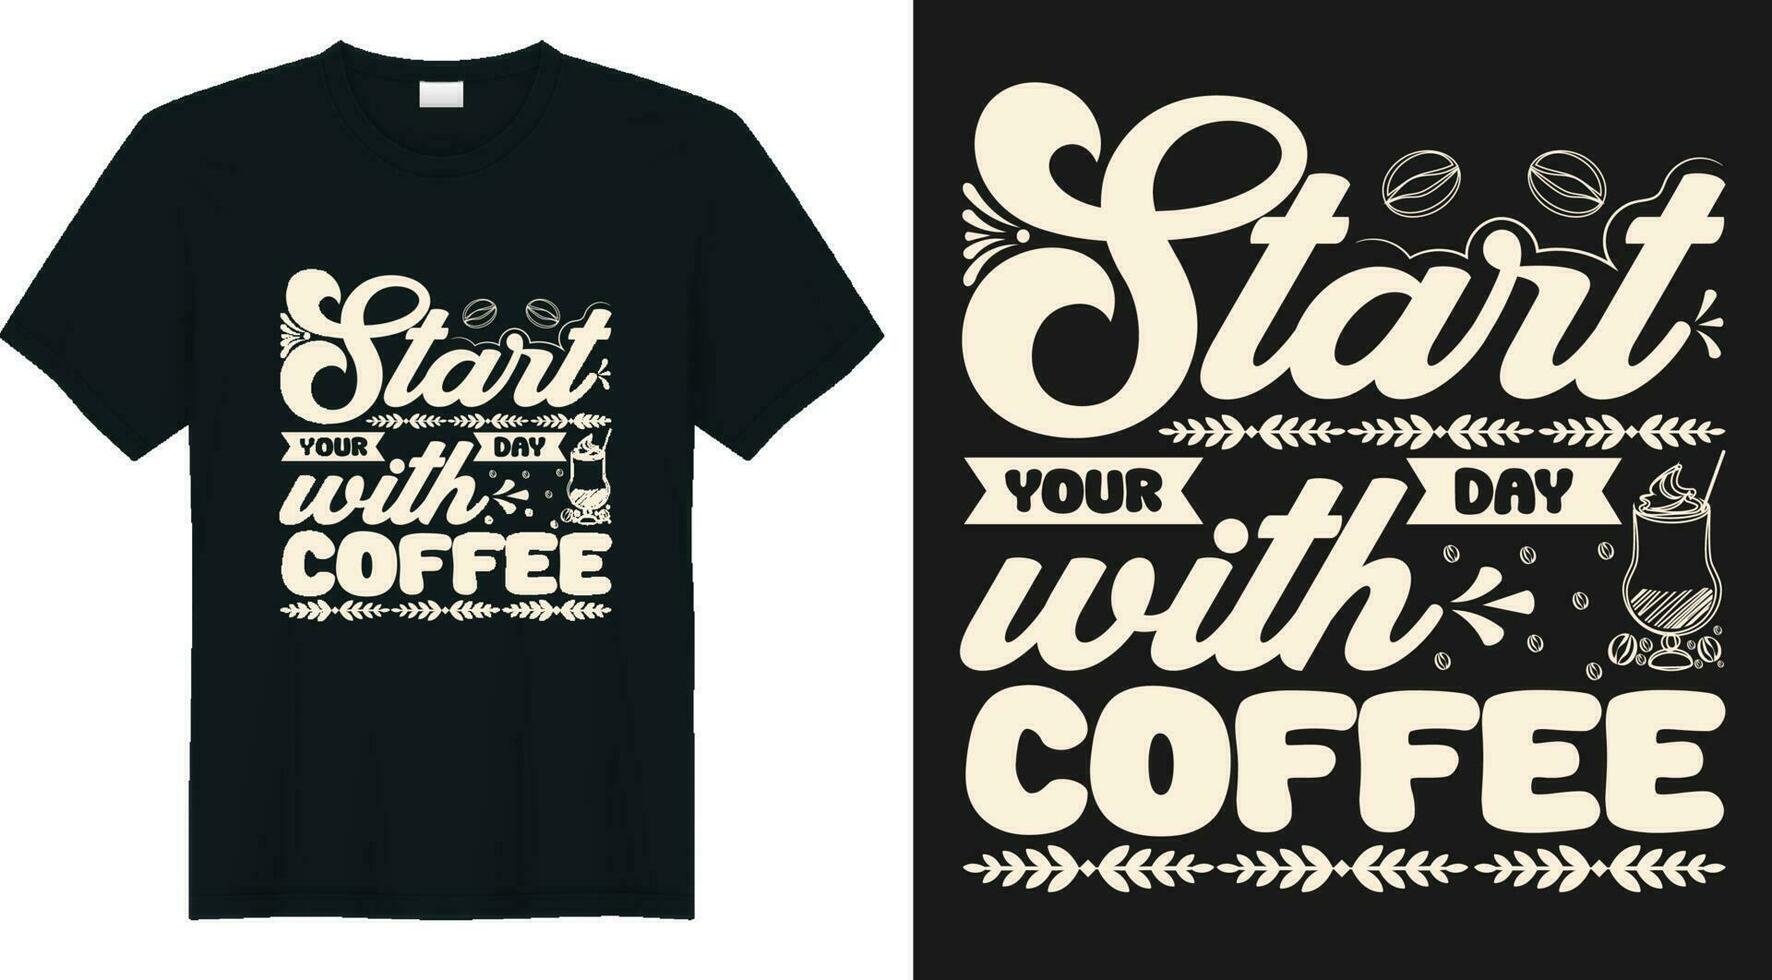 begin uw dag met koffie, t-shirt ontwerp citaat over koffie, koffie minnaar t-shirt ontwerp vector